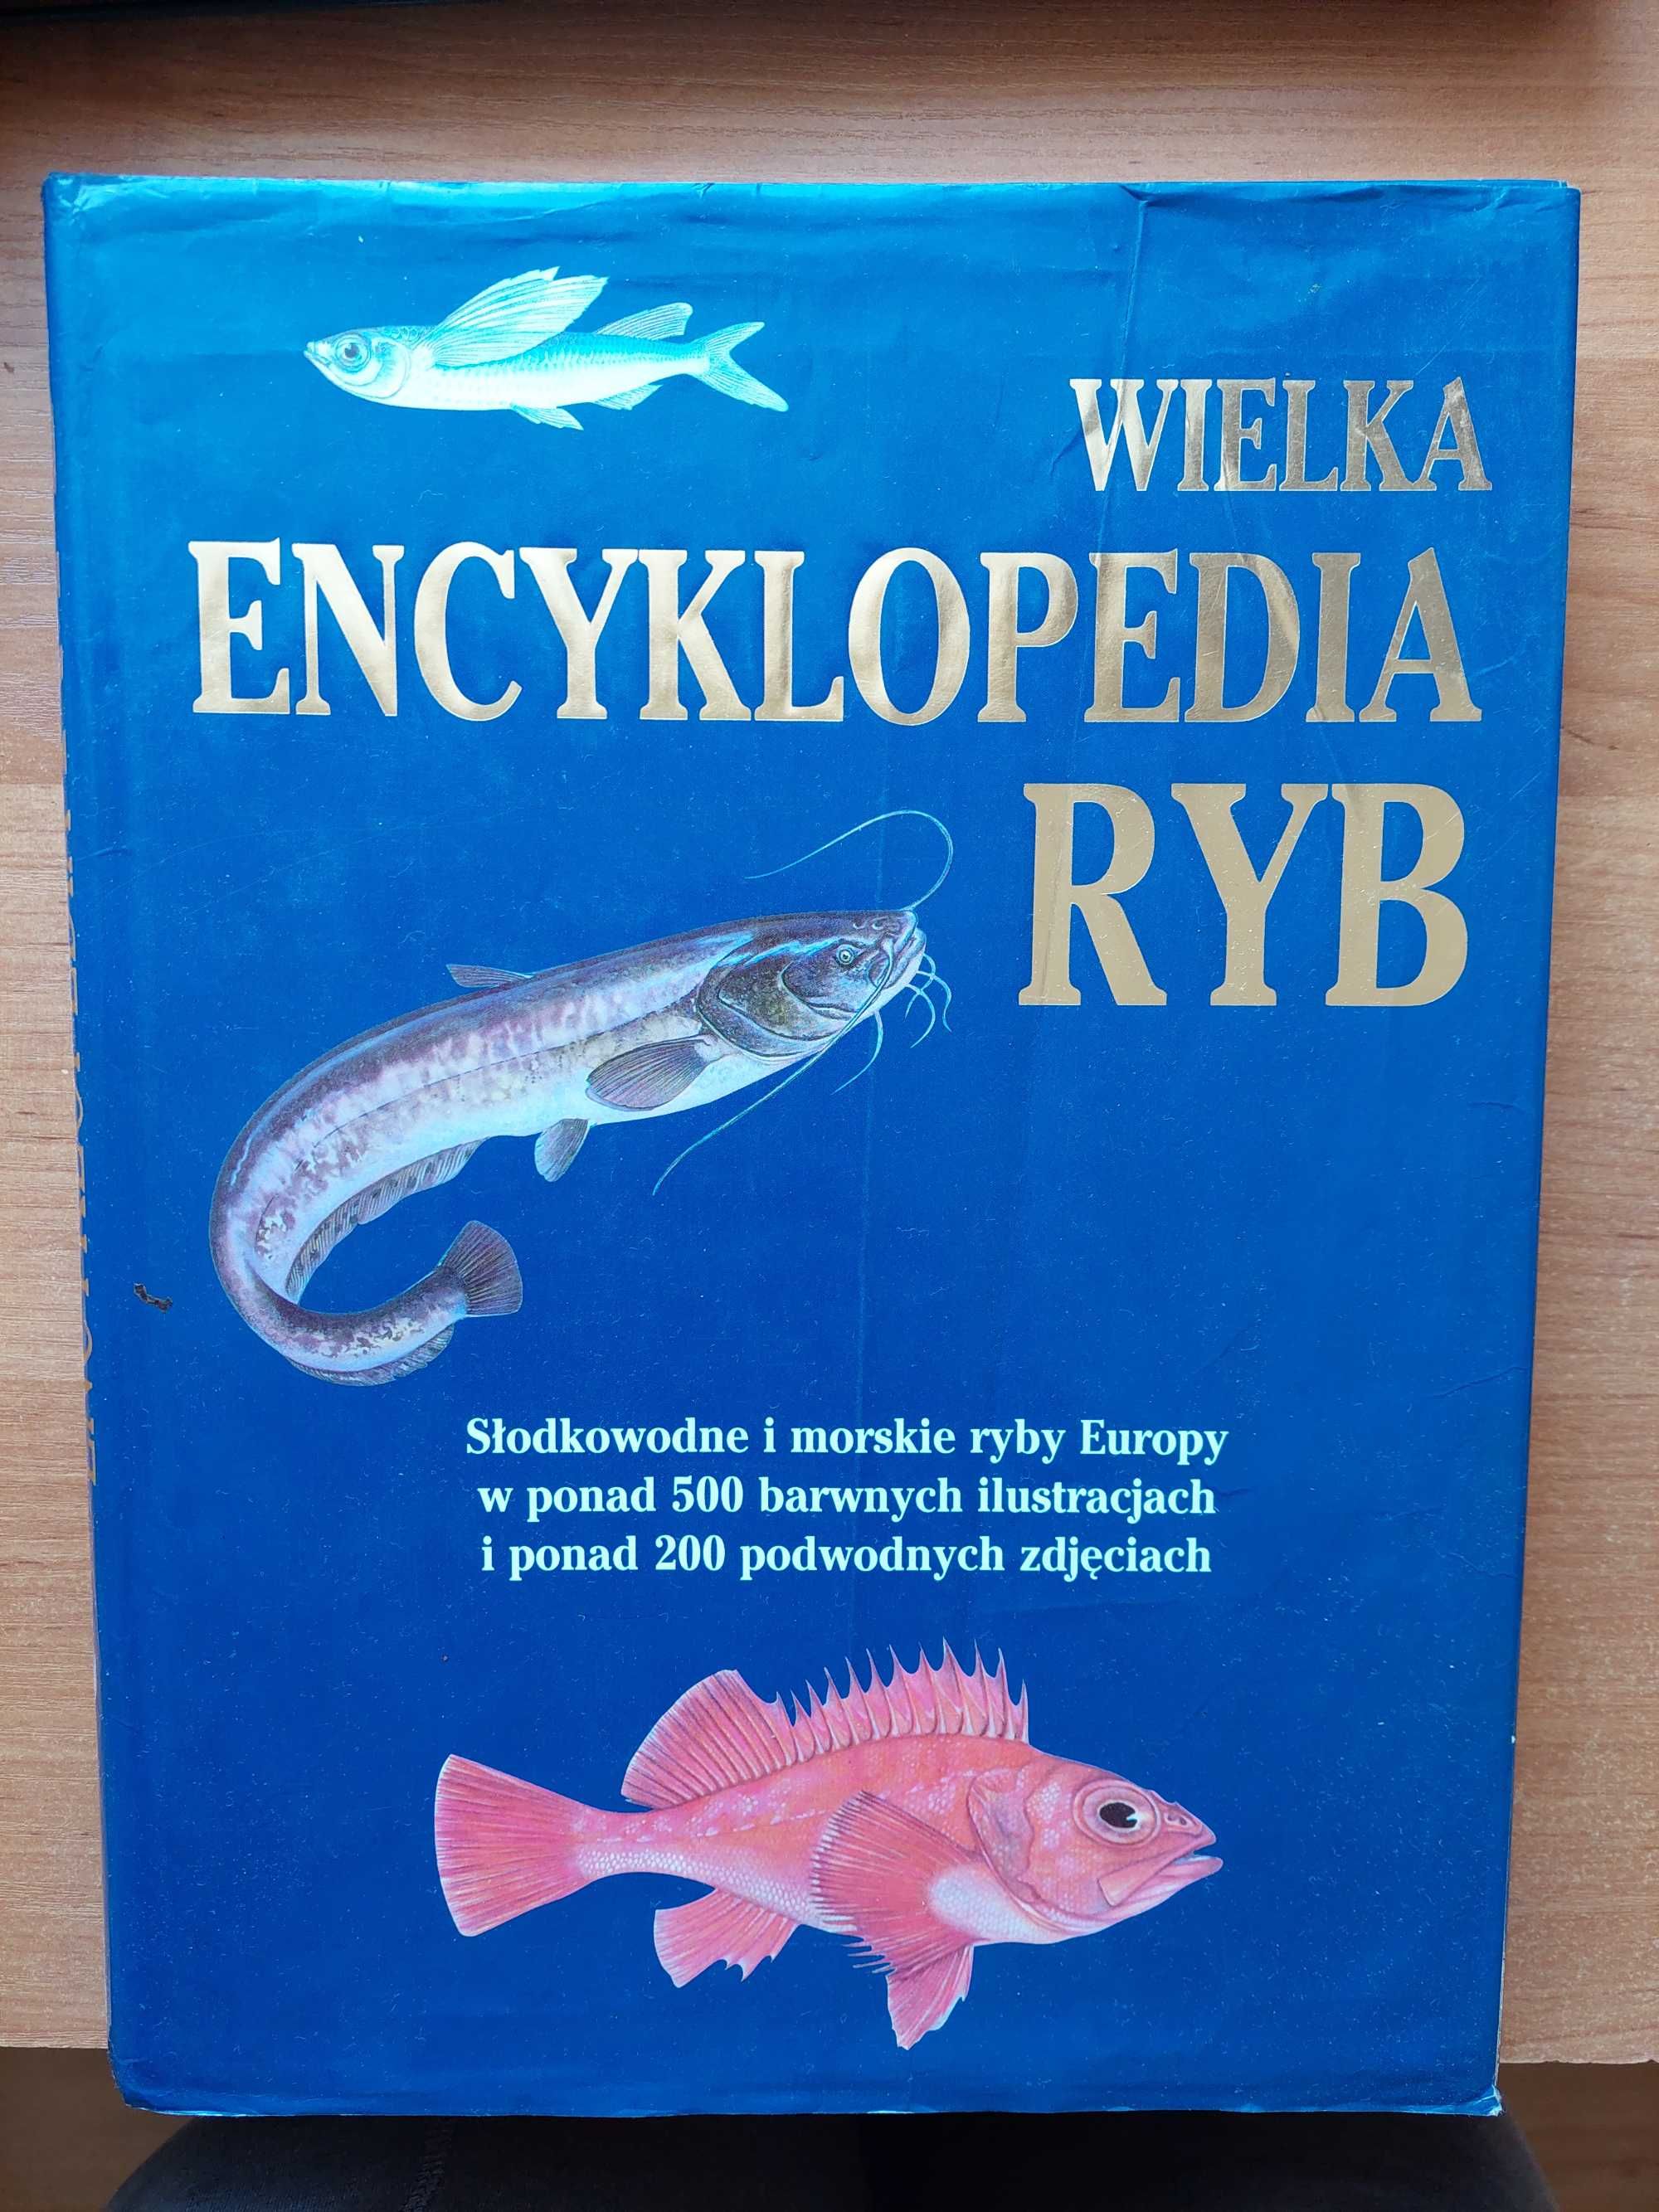 Wielka encyklopedia ryb. Słodkowodne i morskie ryby Europy - album